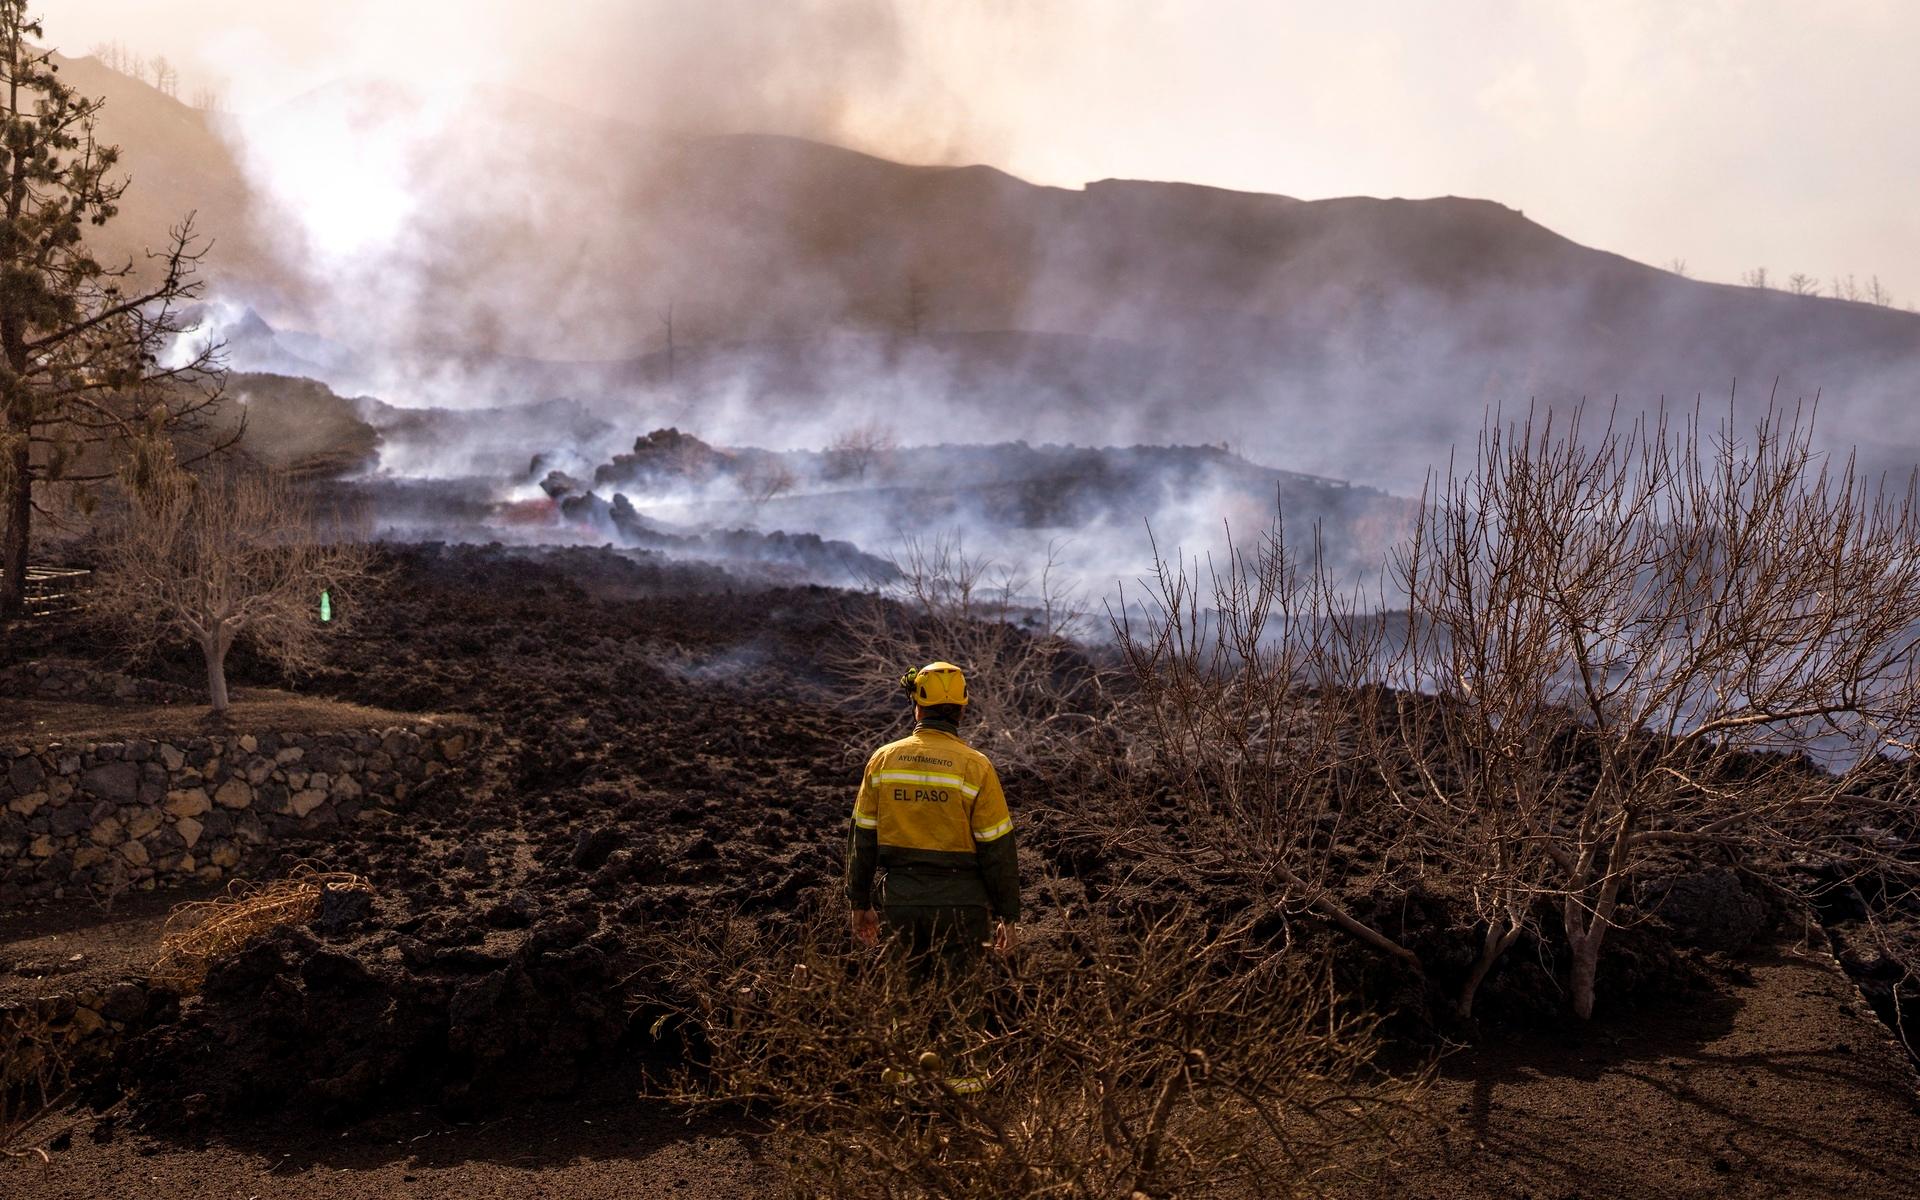 Räddningstjänst har jobbat frenetiskt för att släcka de bränder lavan orsakat.